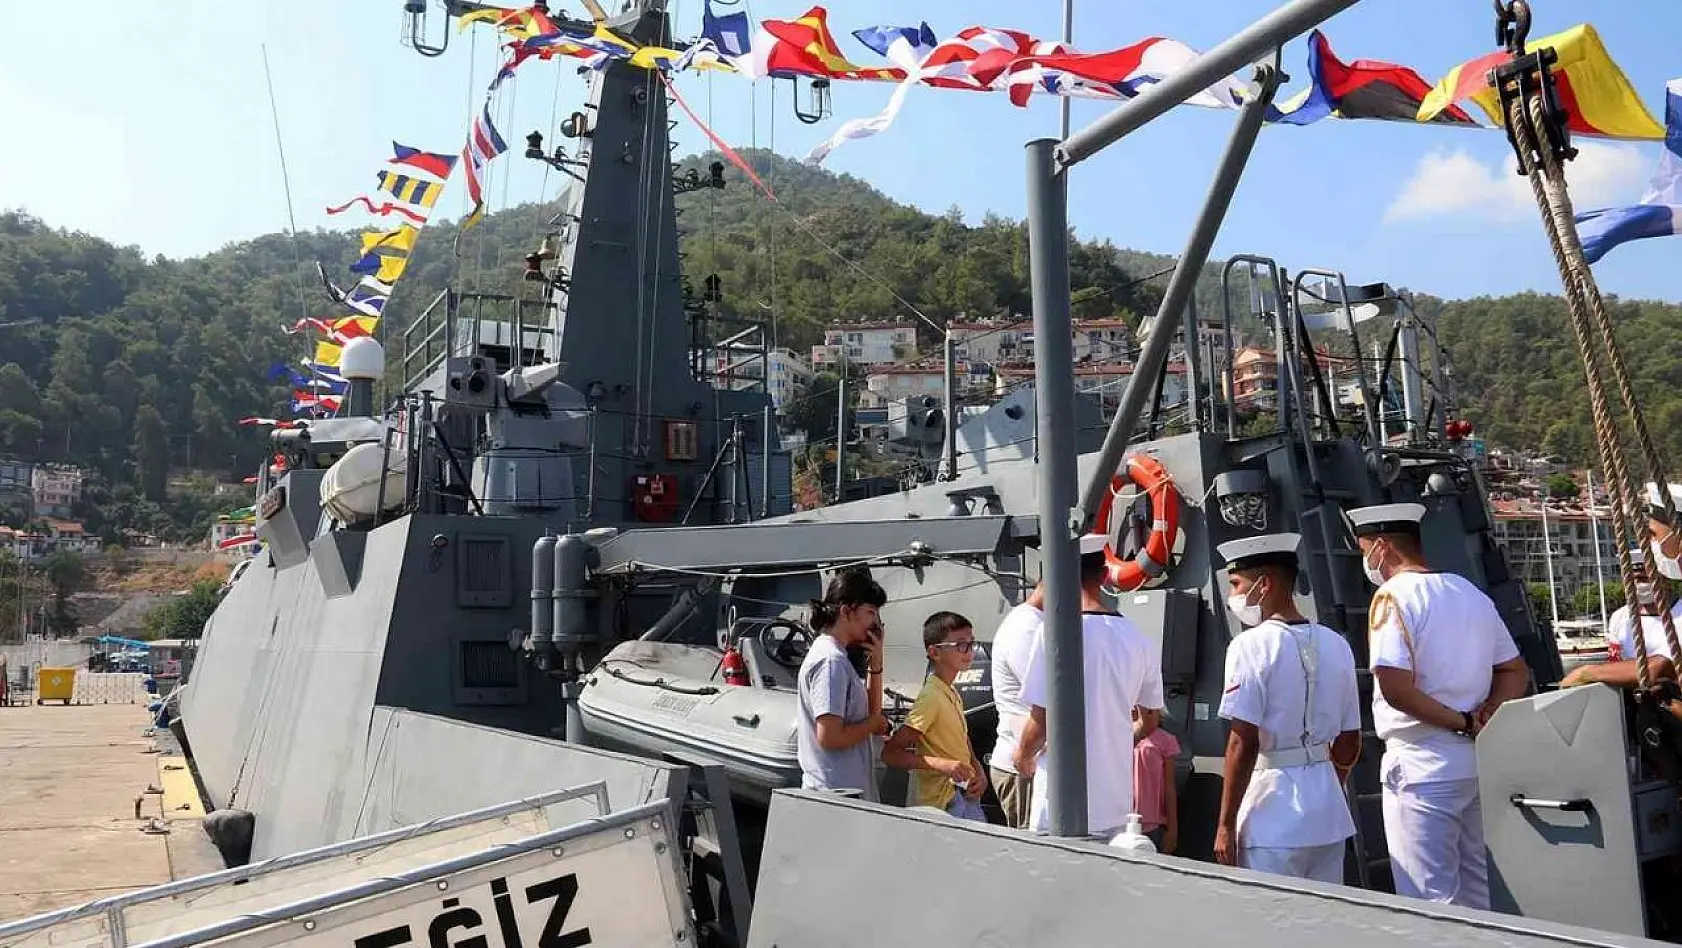 Askeri gemiler, Fethiye'de halkın ziyaretine açıldı